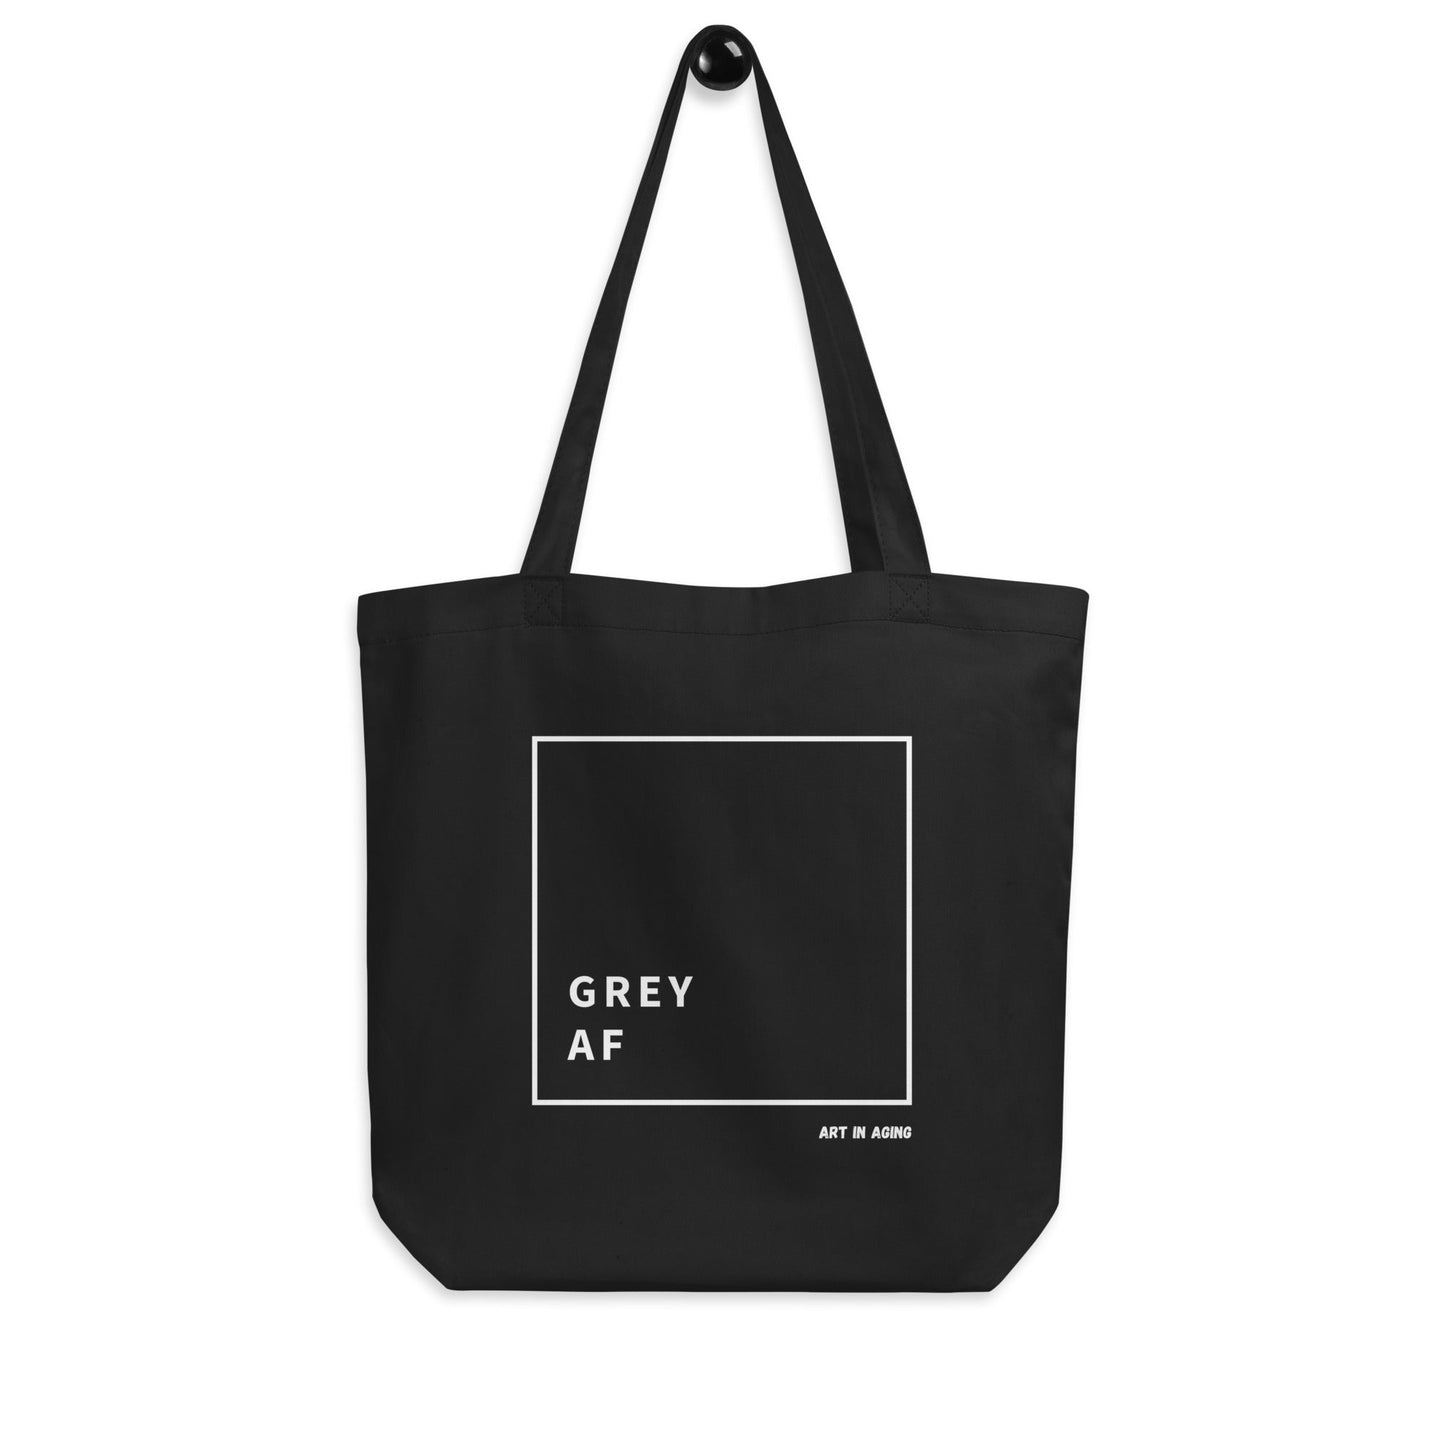 Grey AF Tote Bag | Art in Aging